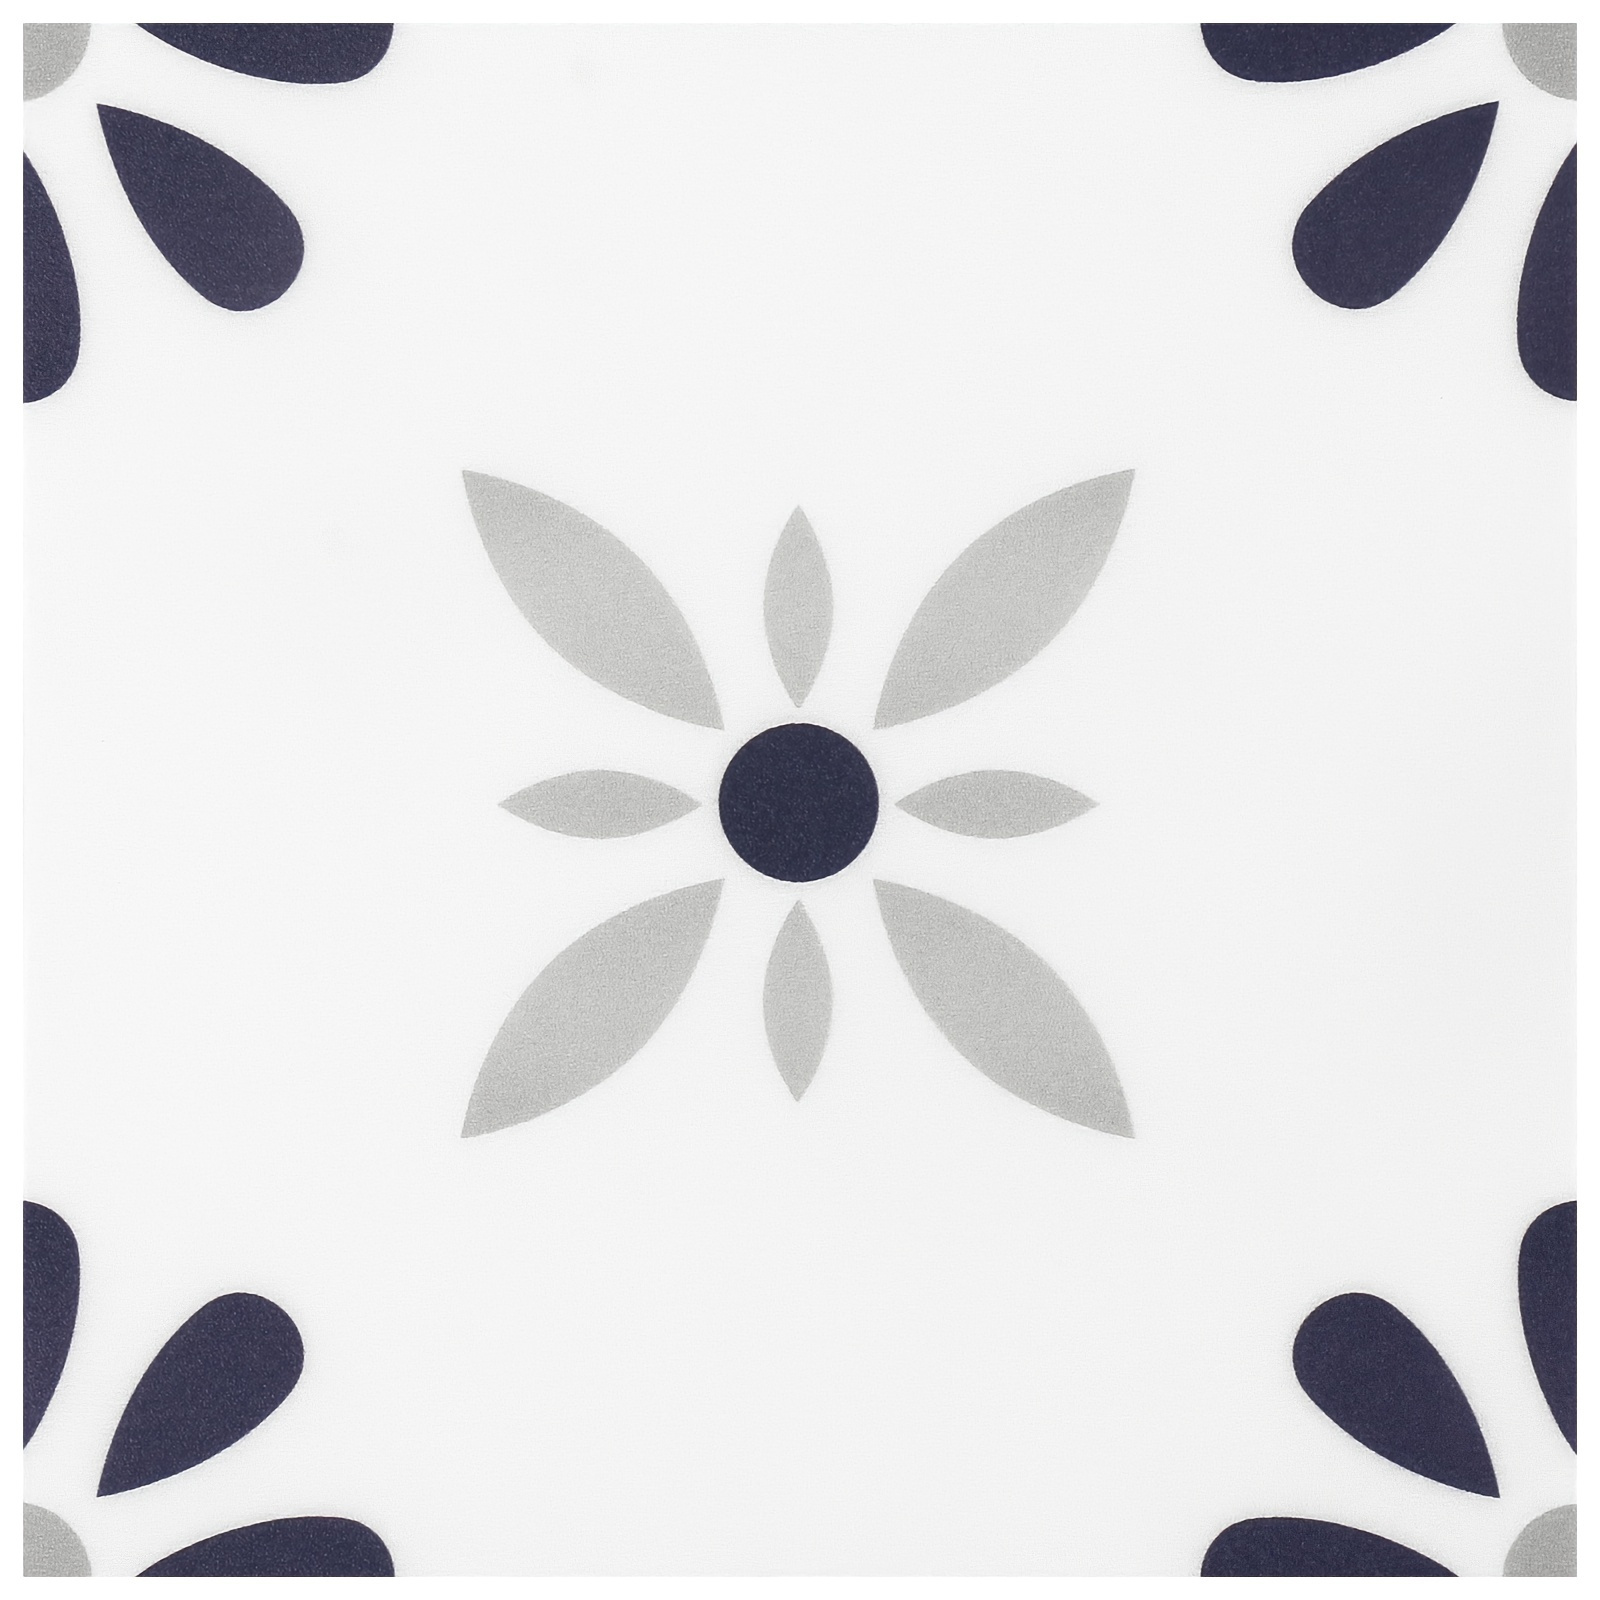  Papel pintado adhesivo de pared con fondo natural en blanco y  negro, diseño floral, hojas divididas, autoadhesivas, despegar y pegar, papel  pintado extraíble de gran tamaño para pared, decoración del hogar